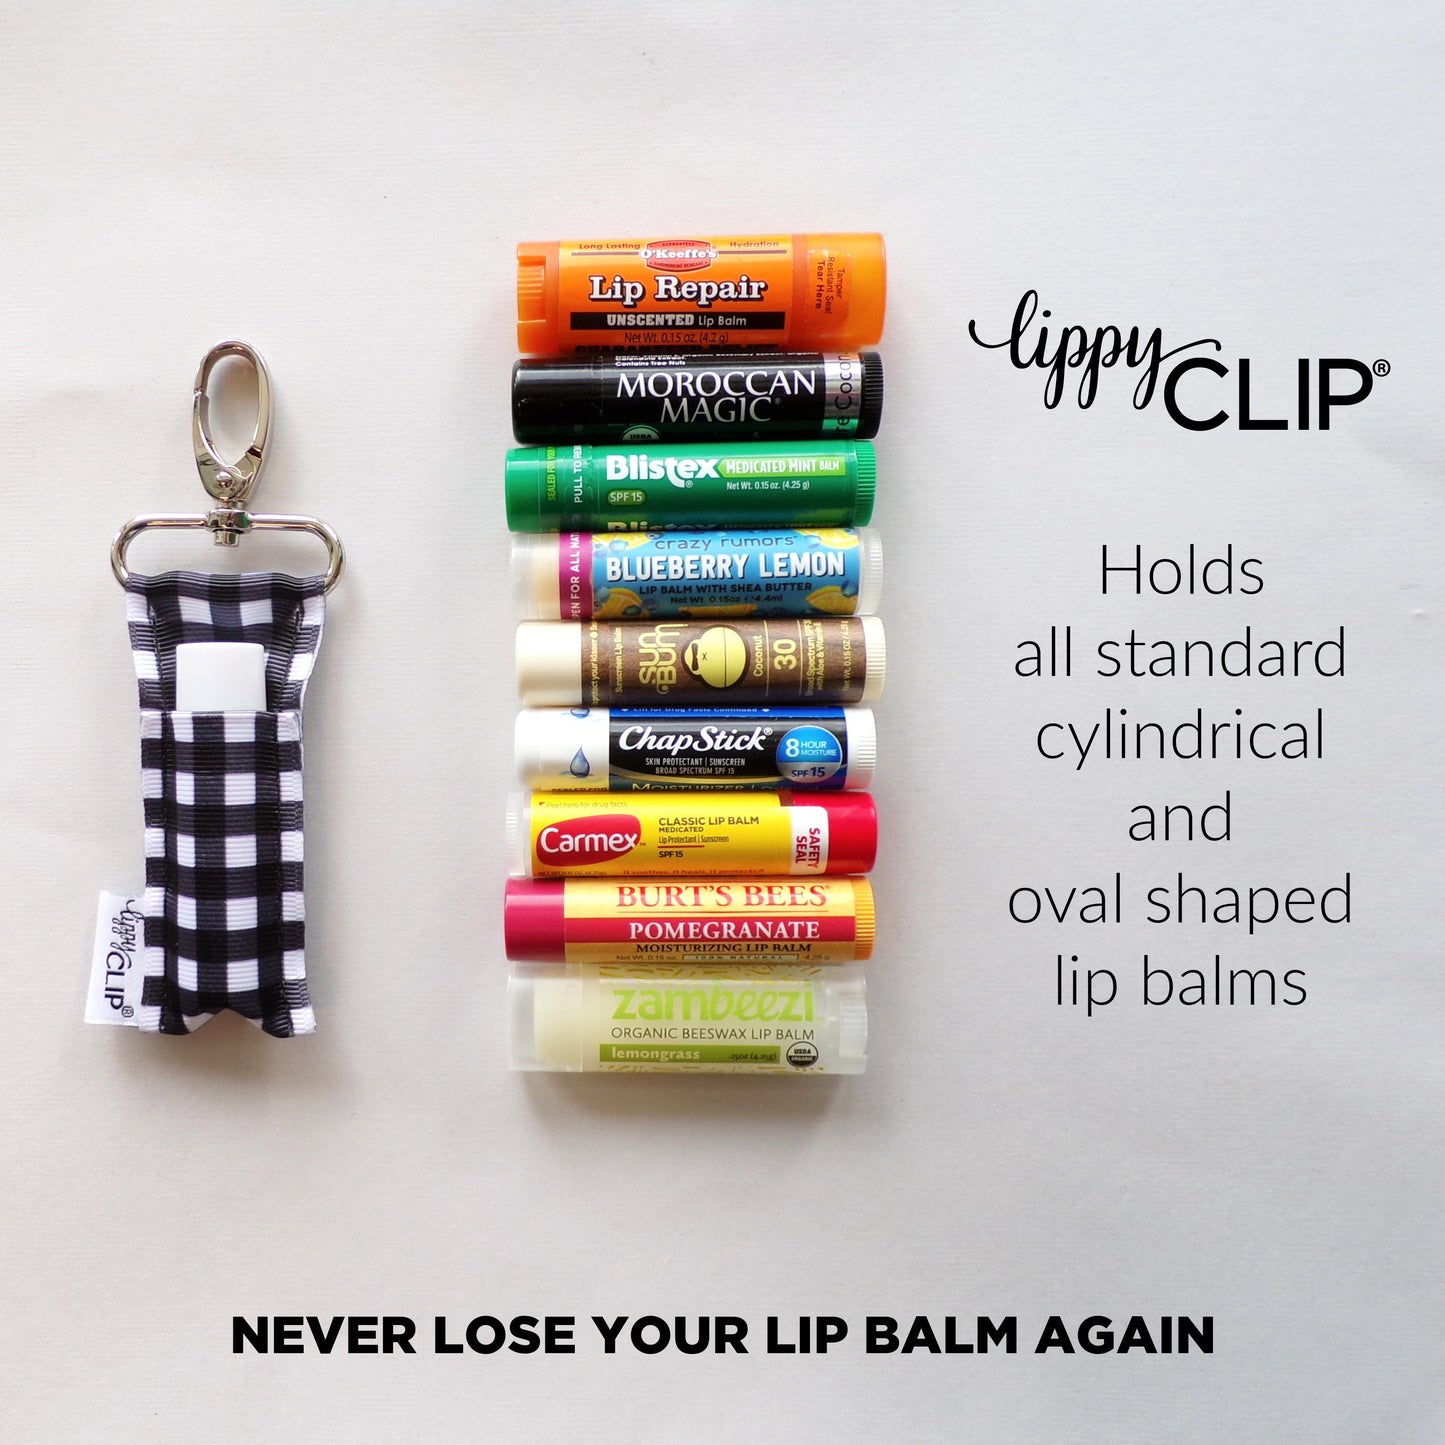 Slam Dunk LippyClip® Lip Balm Holder